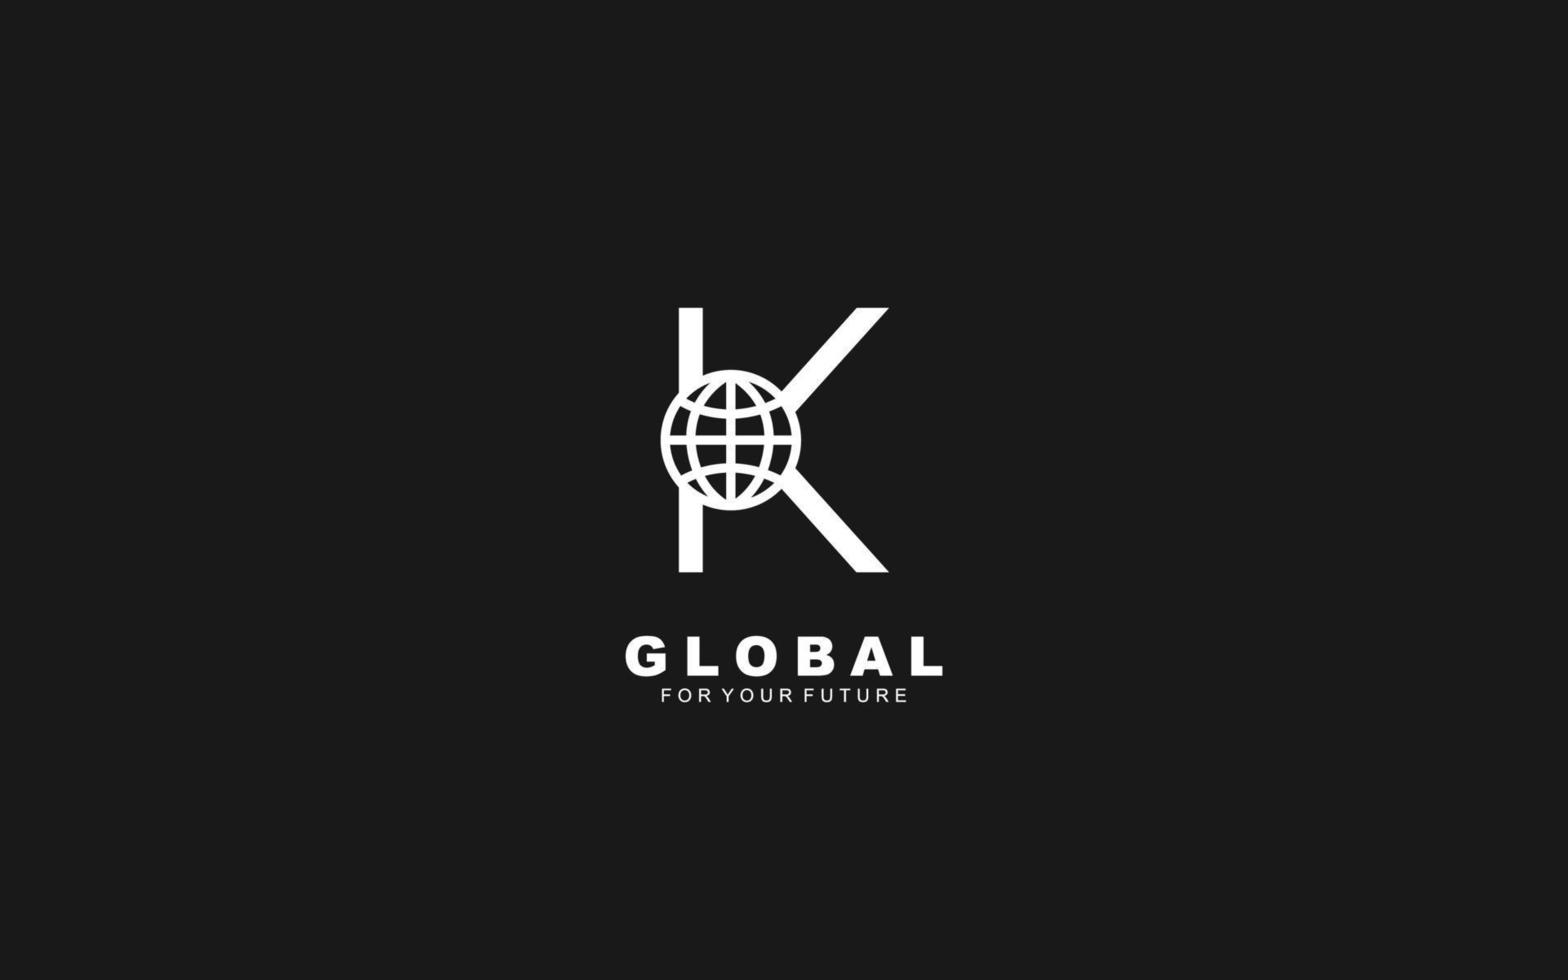 k-Logo-Globus für Identität. Netzwerkvorlagen-Vektorillustration für Ihre Marke. vektor